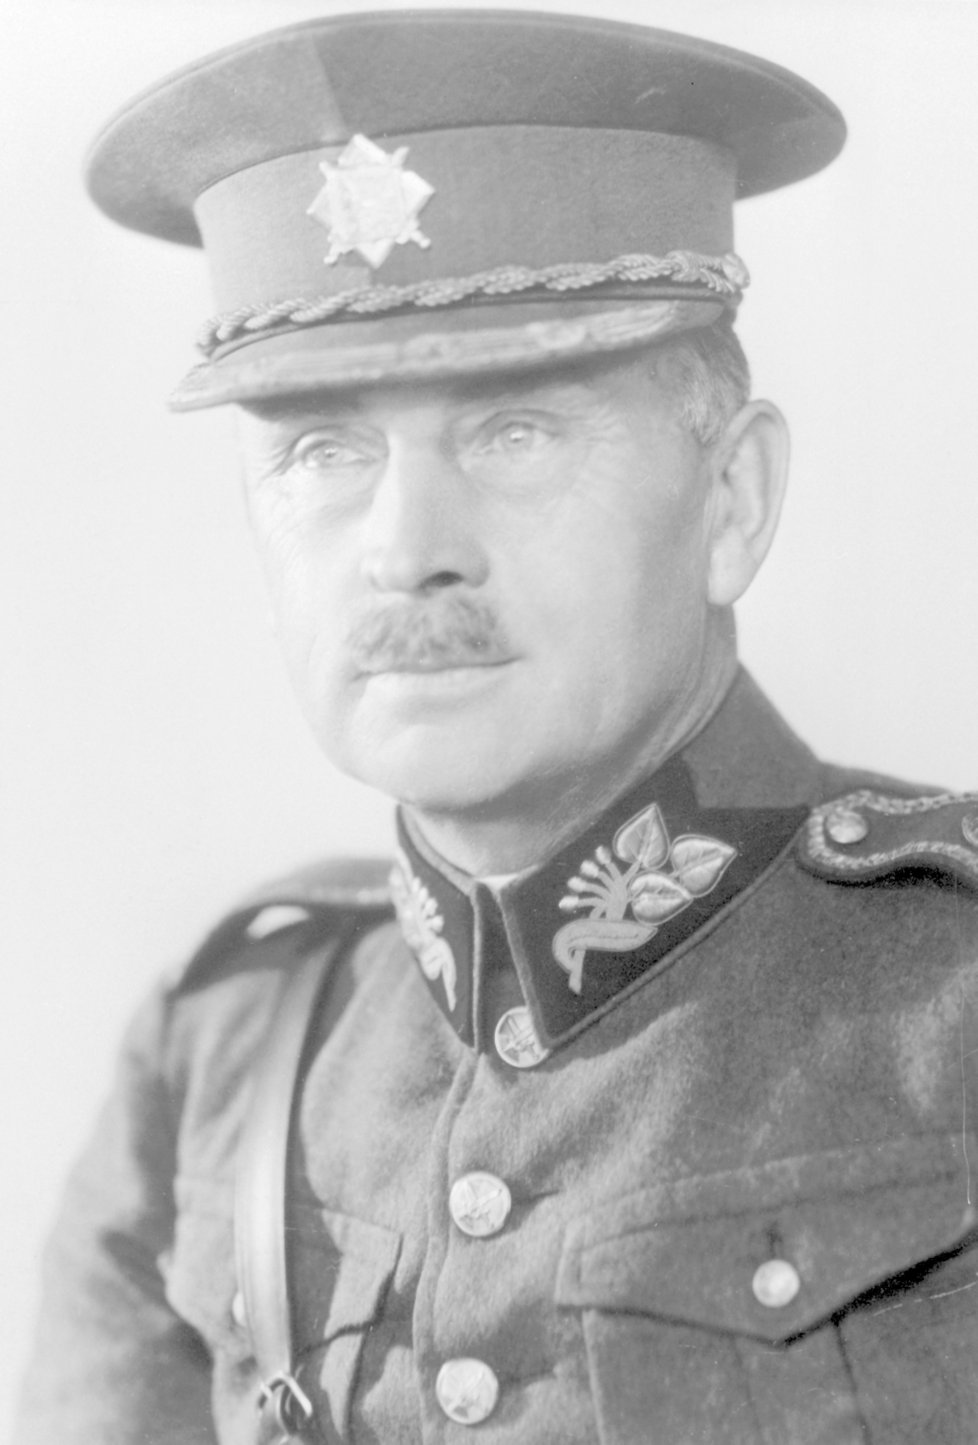 Generál Josef Bílý, vůdce protinacistické odbojové organizace Obrana národa.